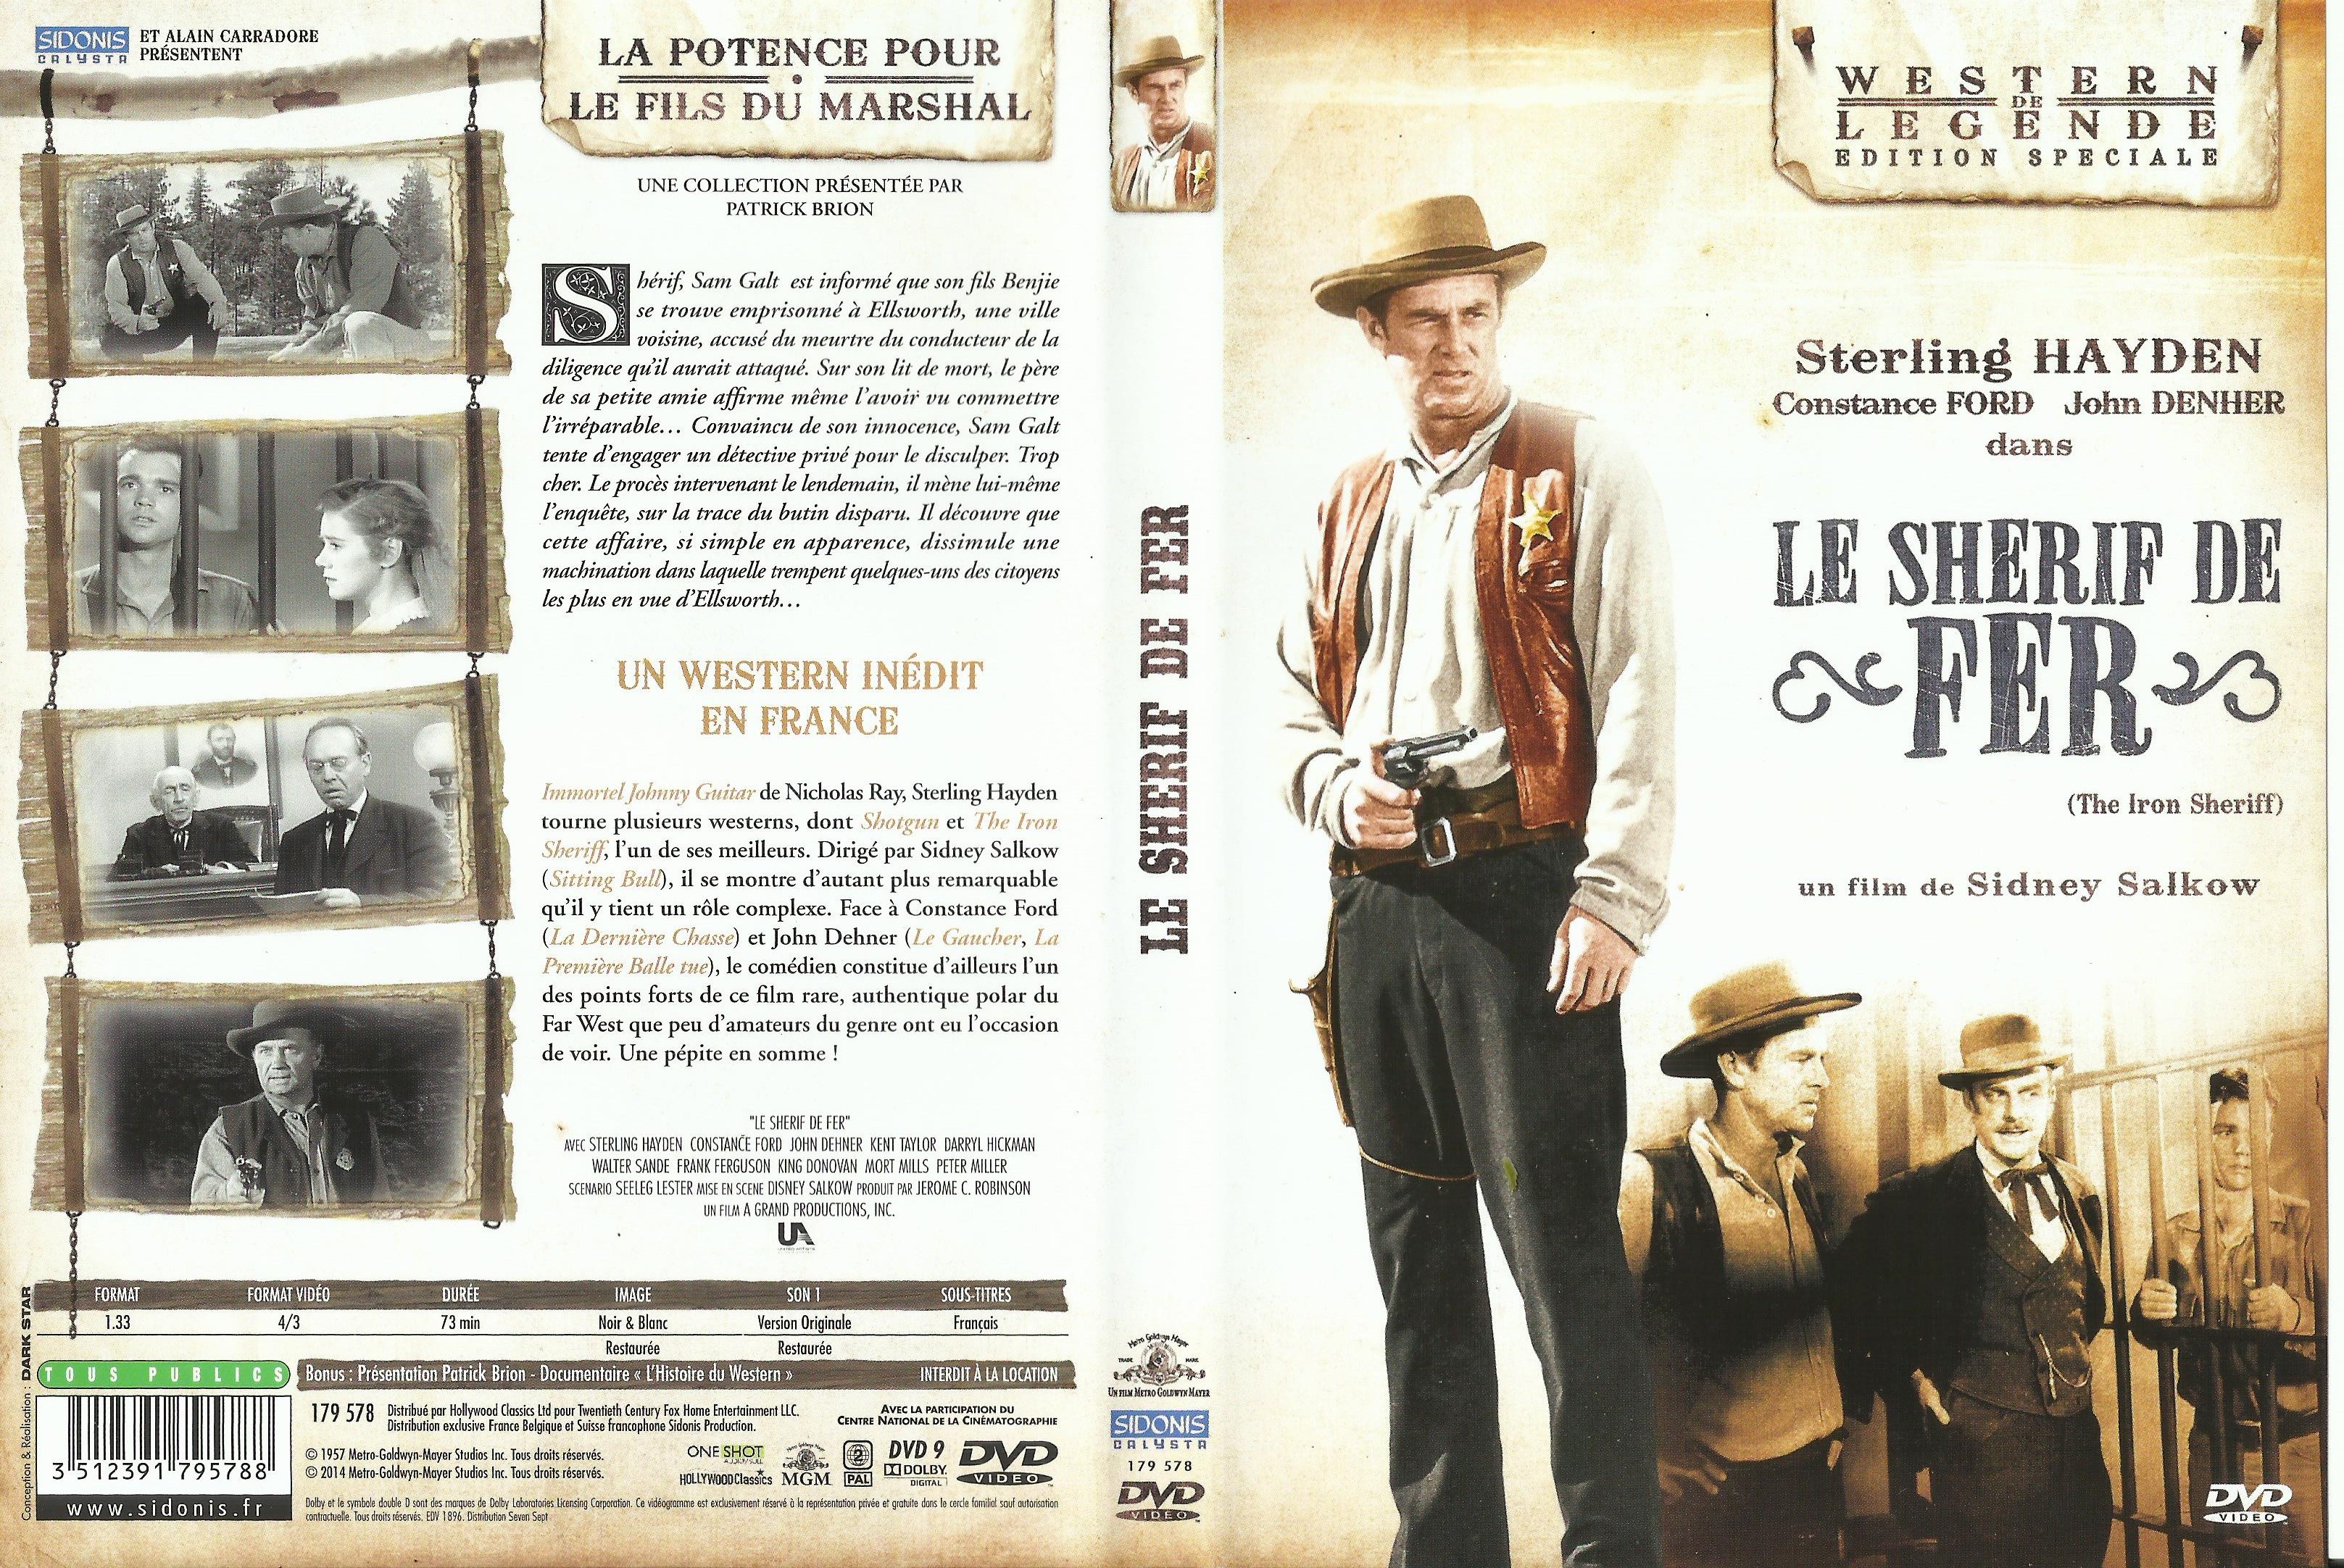 Jaquette DVD Le sherif de fer